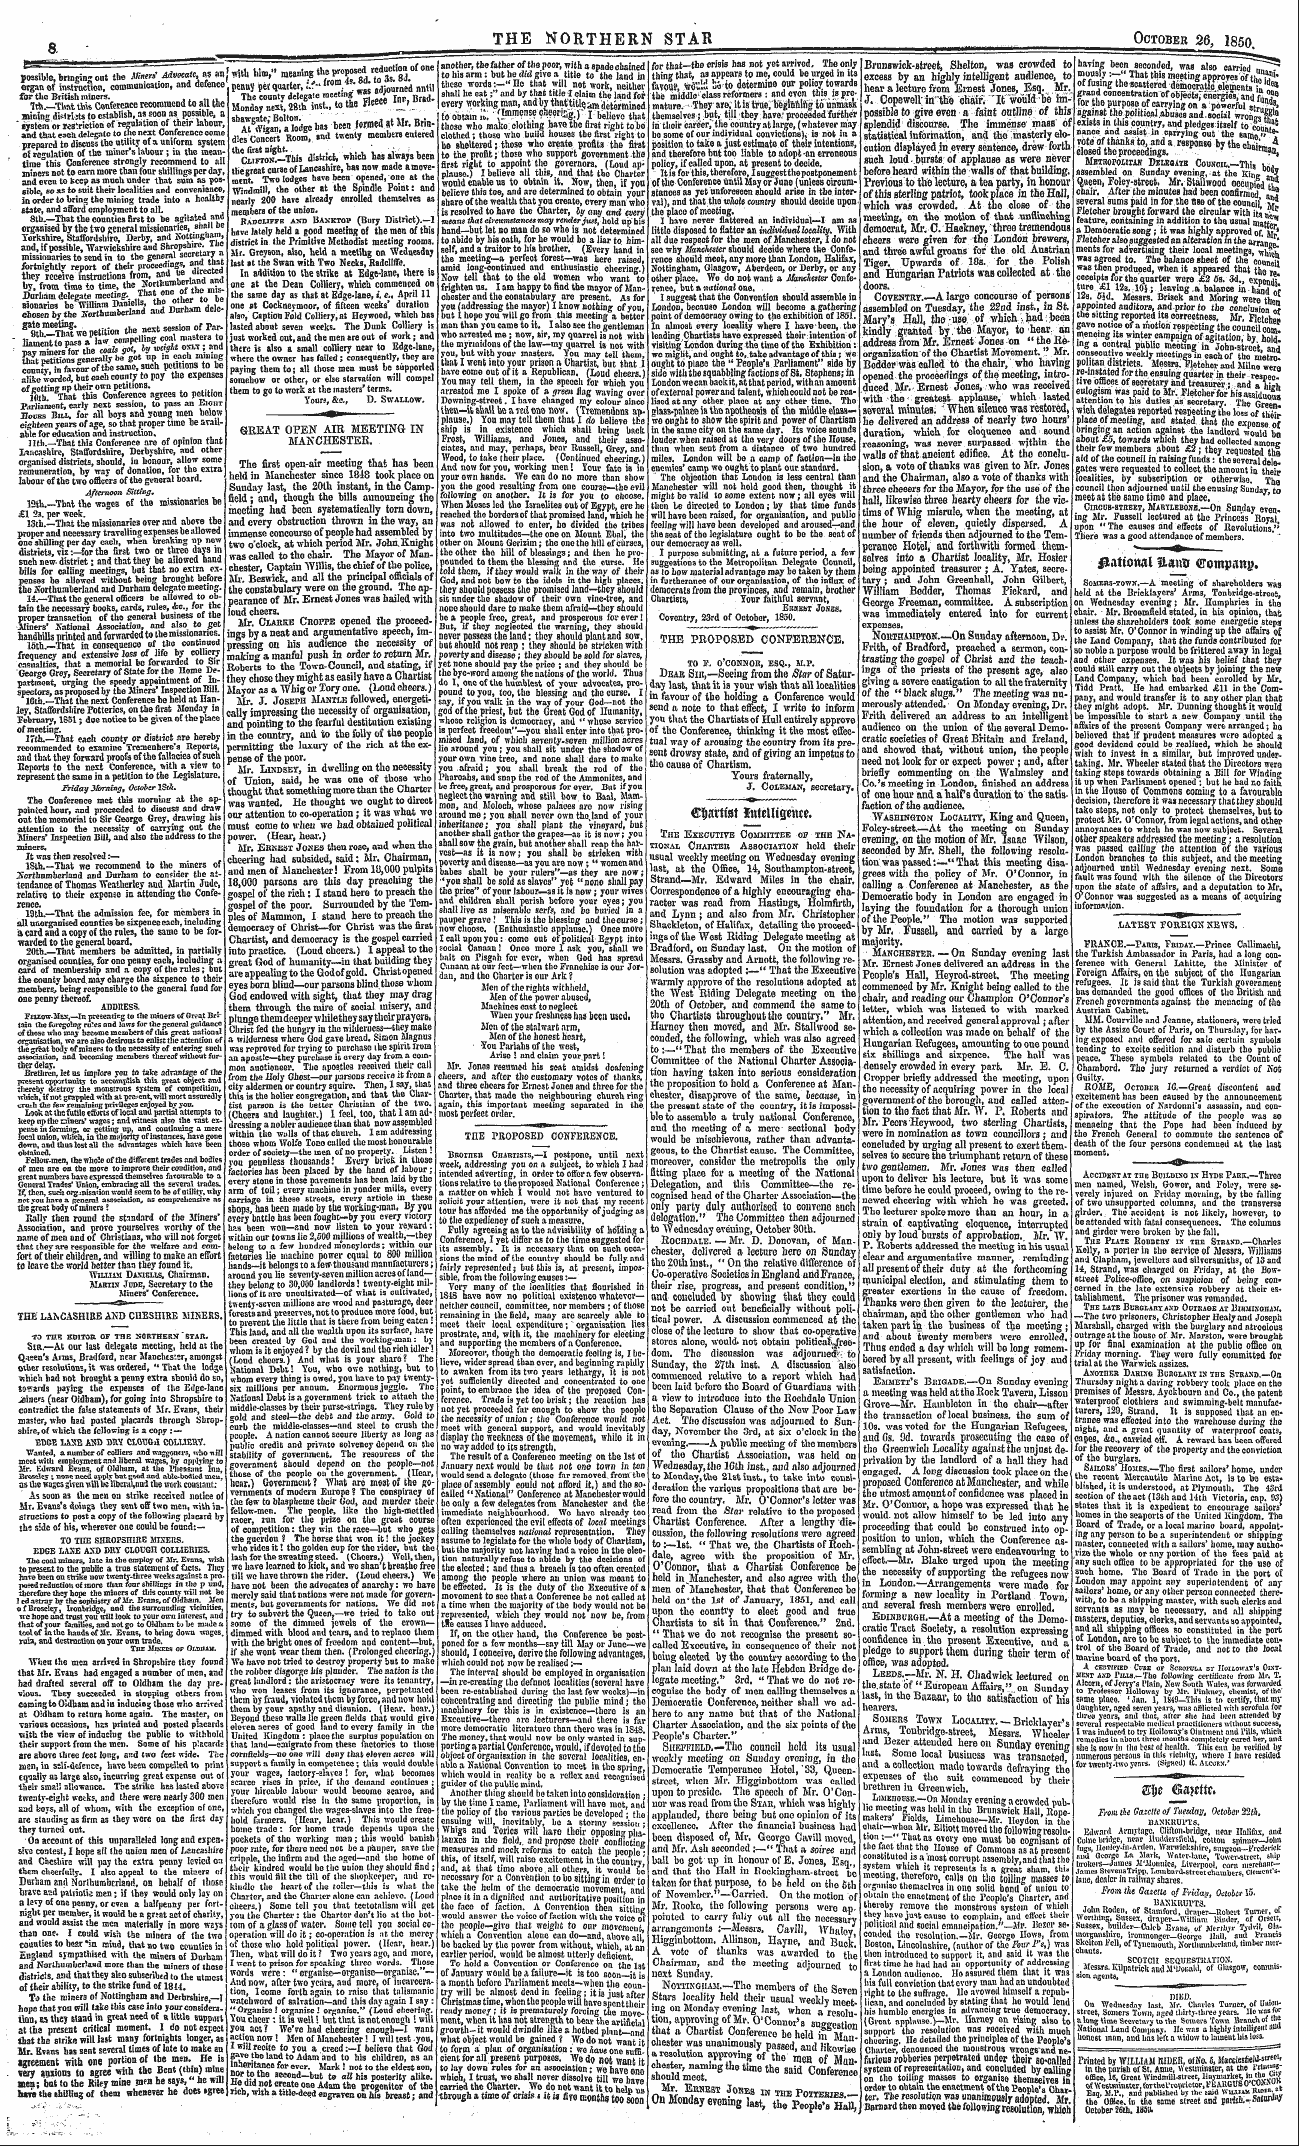 Northern Star (1837-1852): jS F Y, 3rd edition - ¦^A Ttotwl %Am -Crompatty.